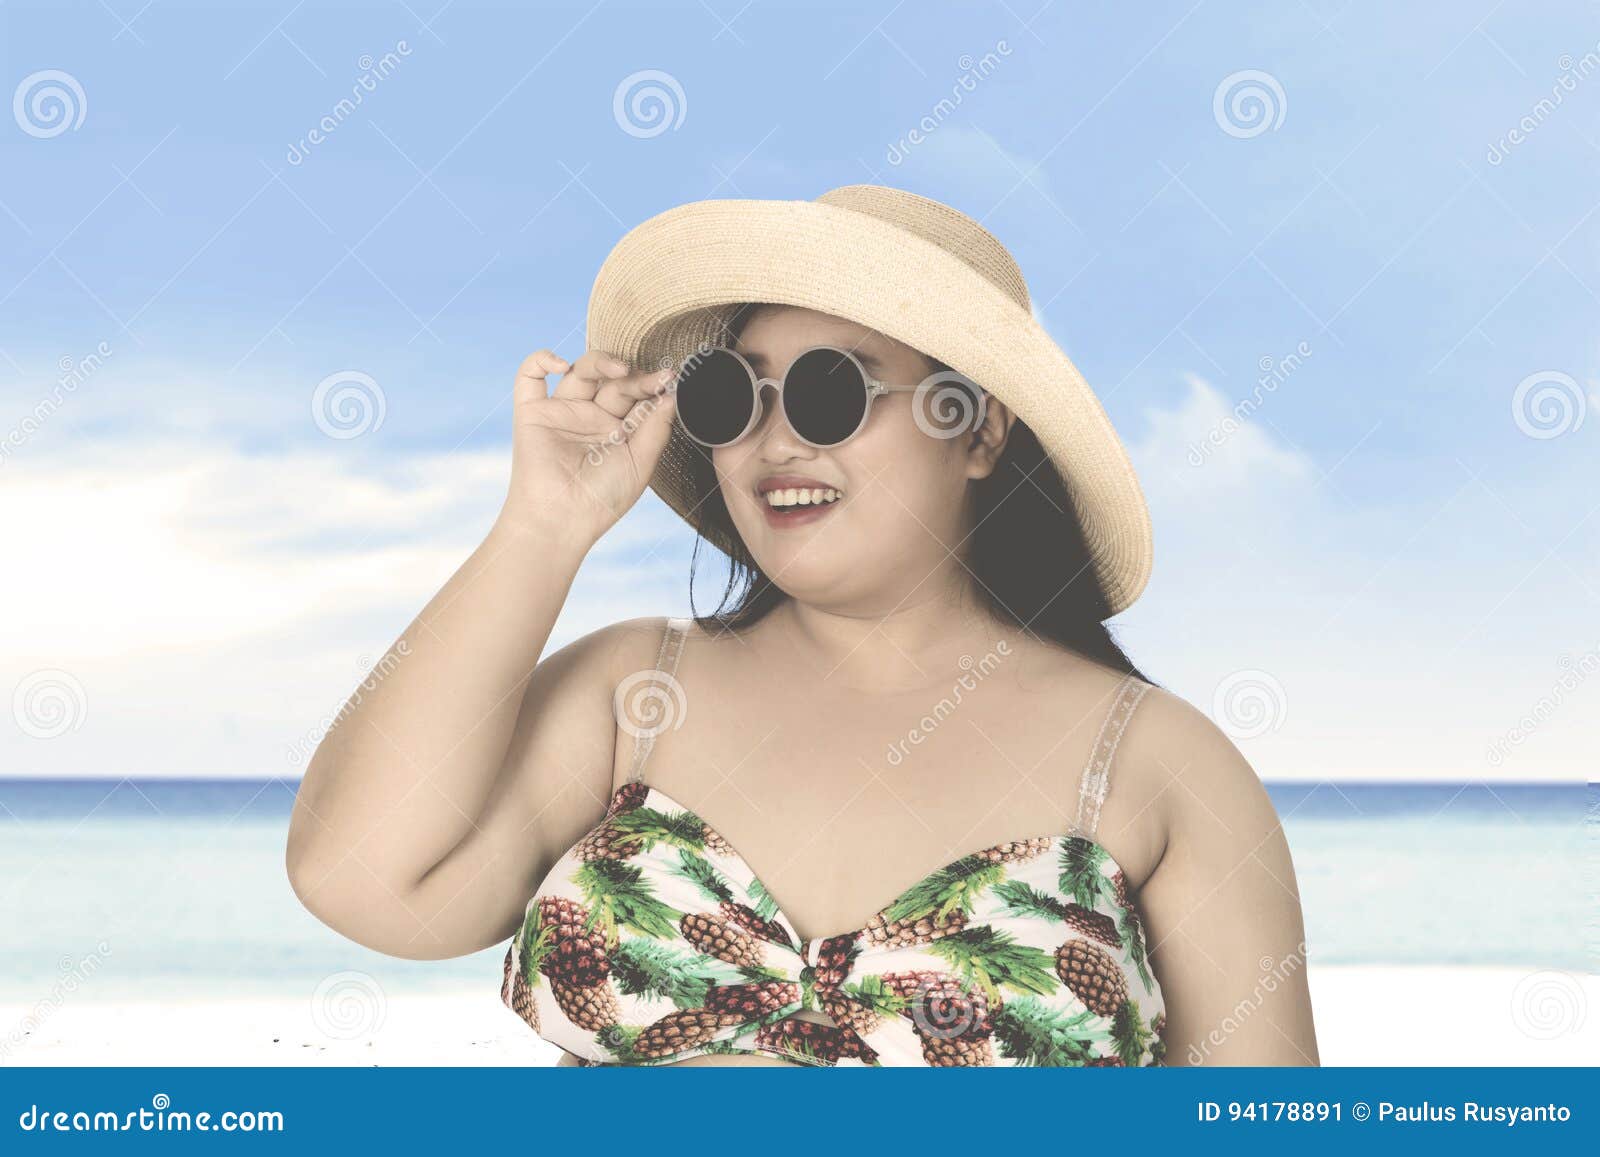 Толстая в очках видео. Полная девушка в очках. Полная женщина в солнечных очках. Полная женщина на пляже в шляпе. Толстая женщина в шляпе.